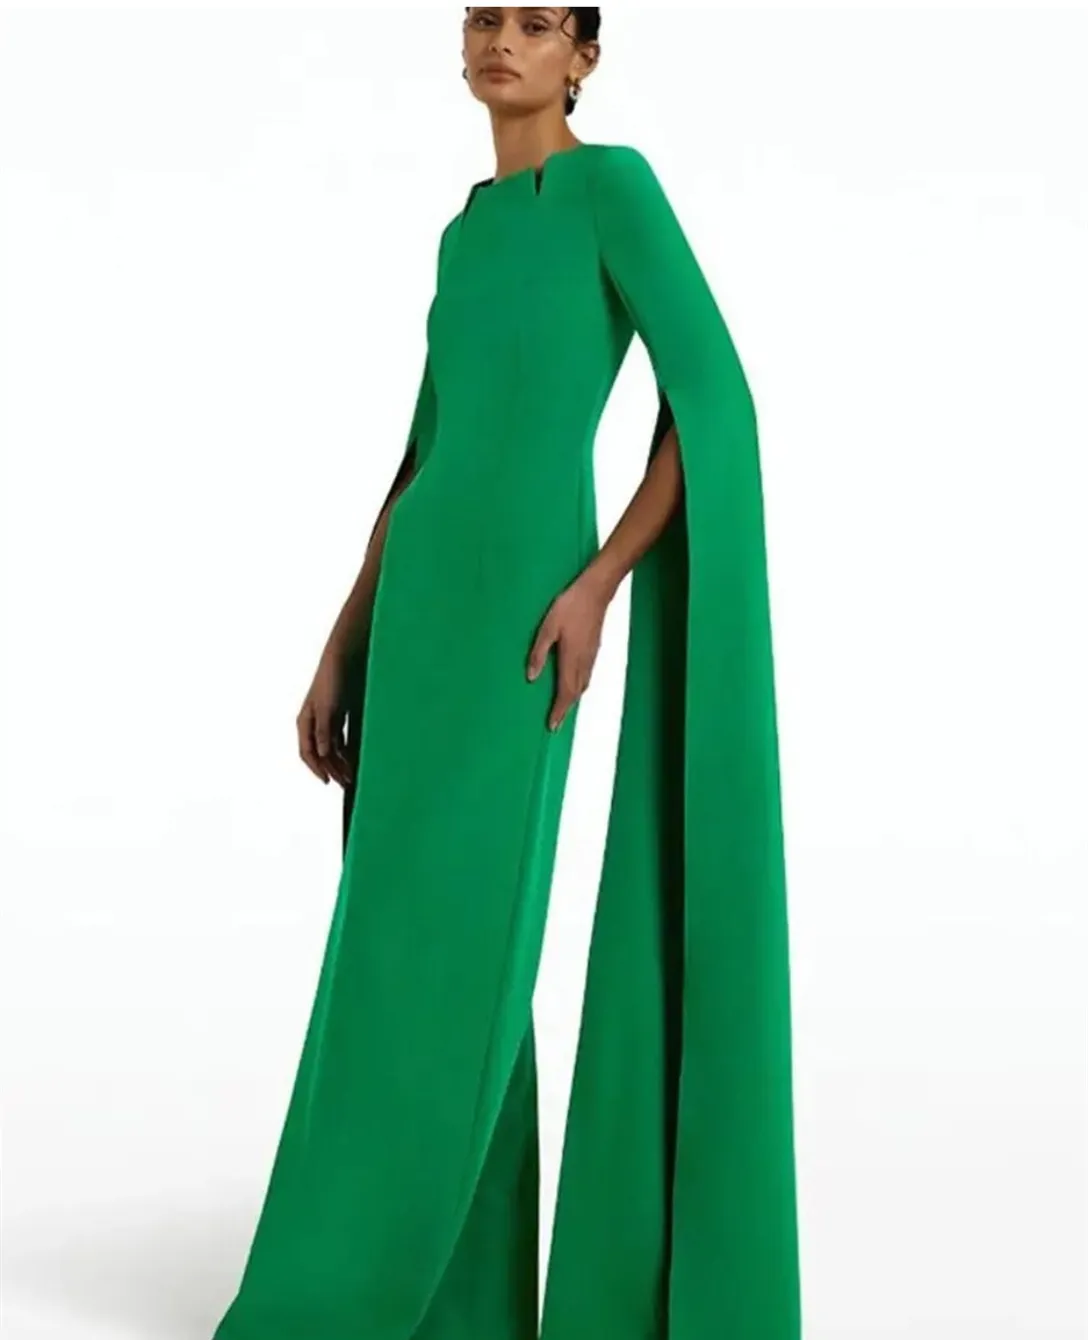 Edel long crepe grüne Abendkleider mit Ärmelnscheide Asymmetrische Hals bodenlange Reißverschluss -Rückenabschlussabschlusskleider für Frauen